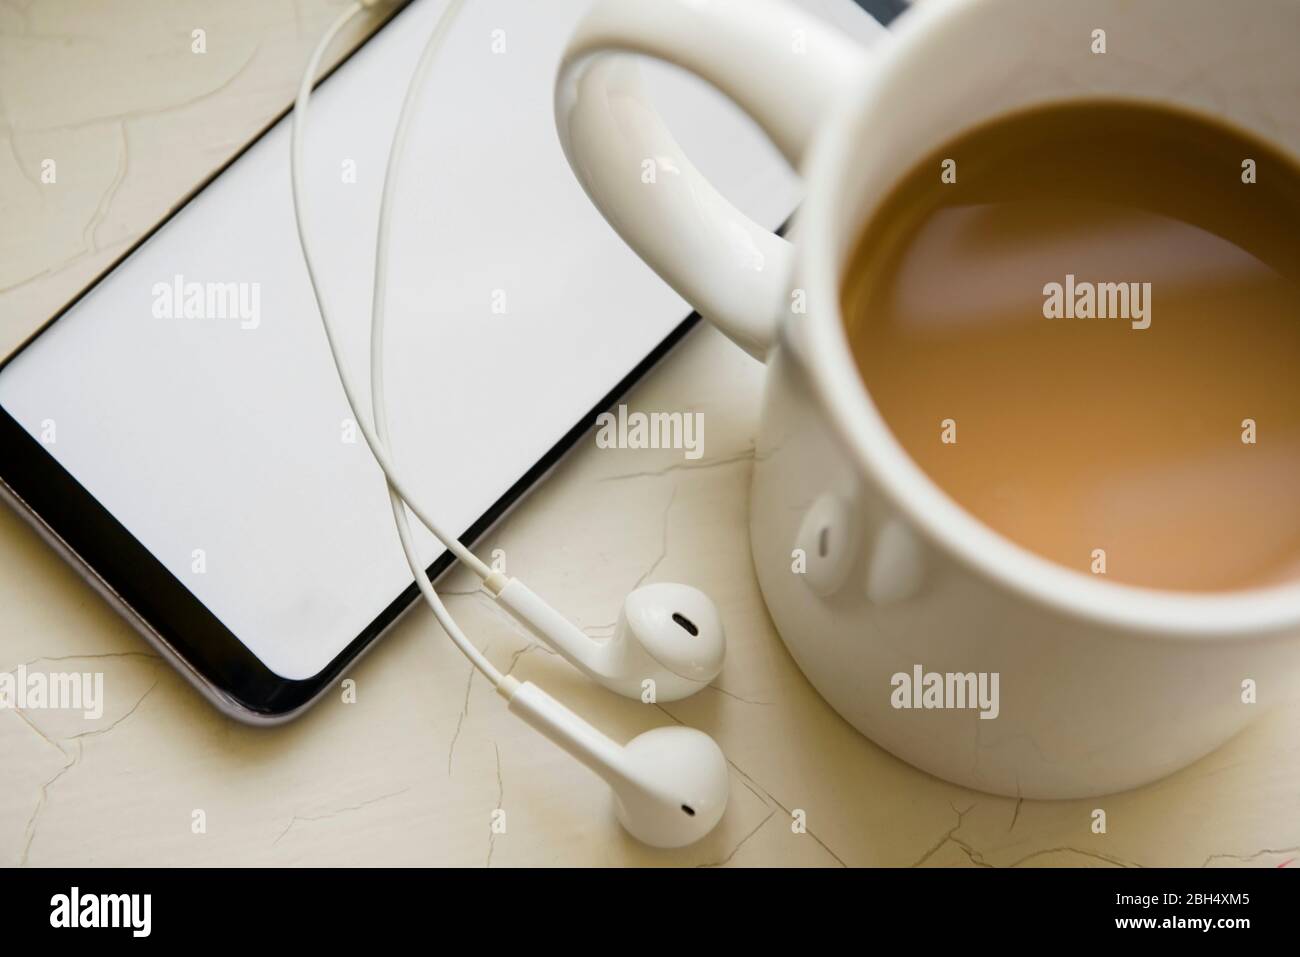 Kopfhörer, Smartphone und eine Tasse Kaffee Stockfoto